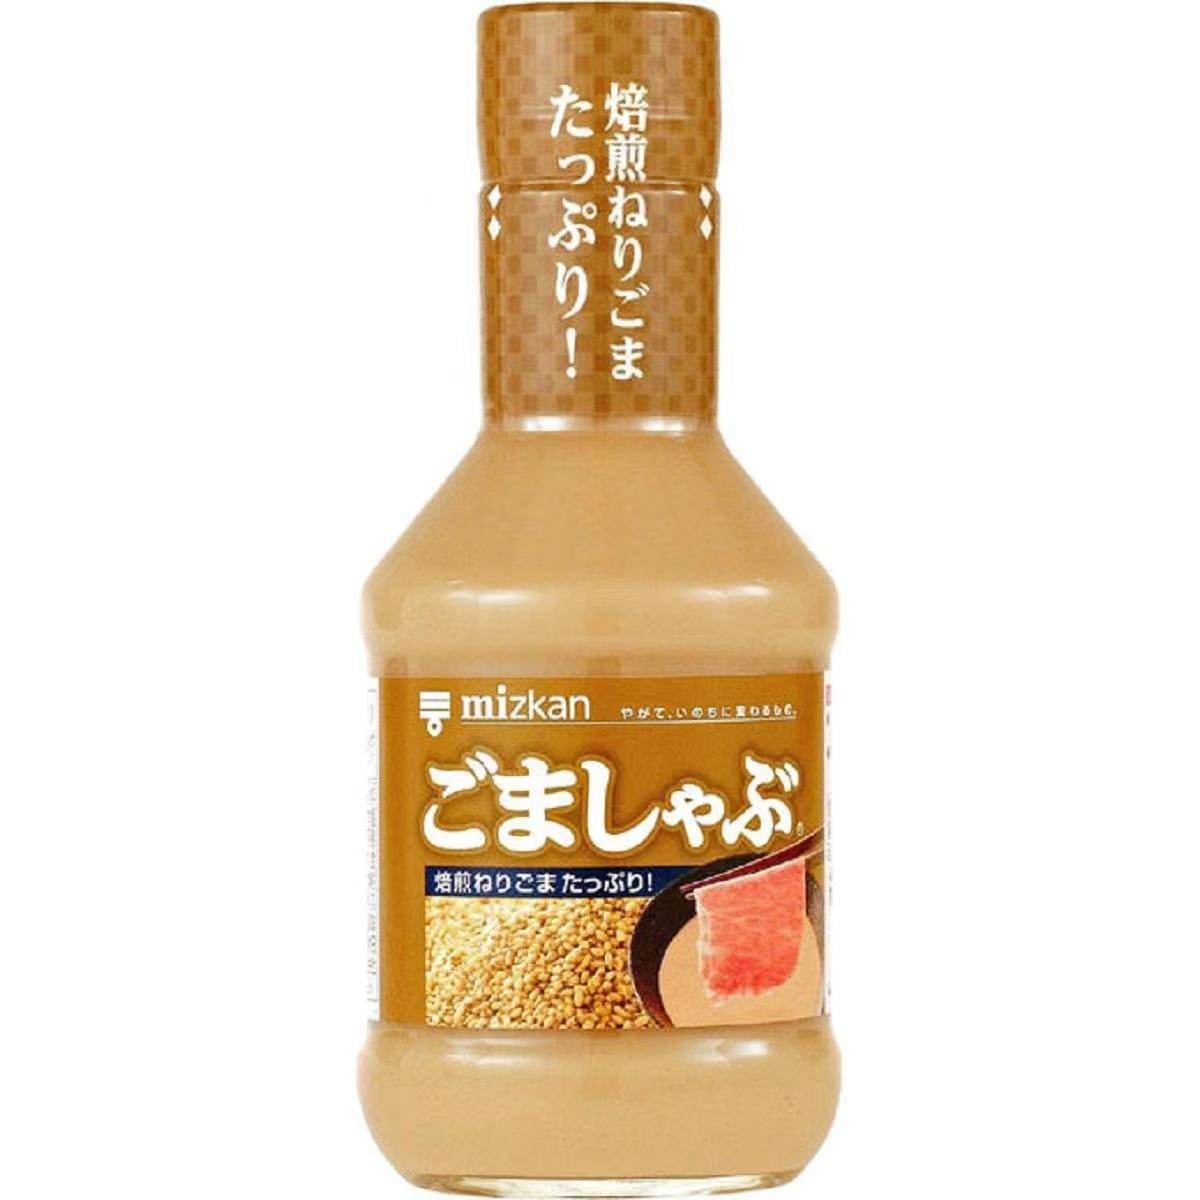 mizkan-sesame-shabu-sauce